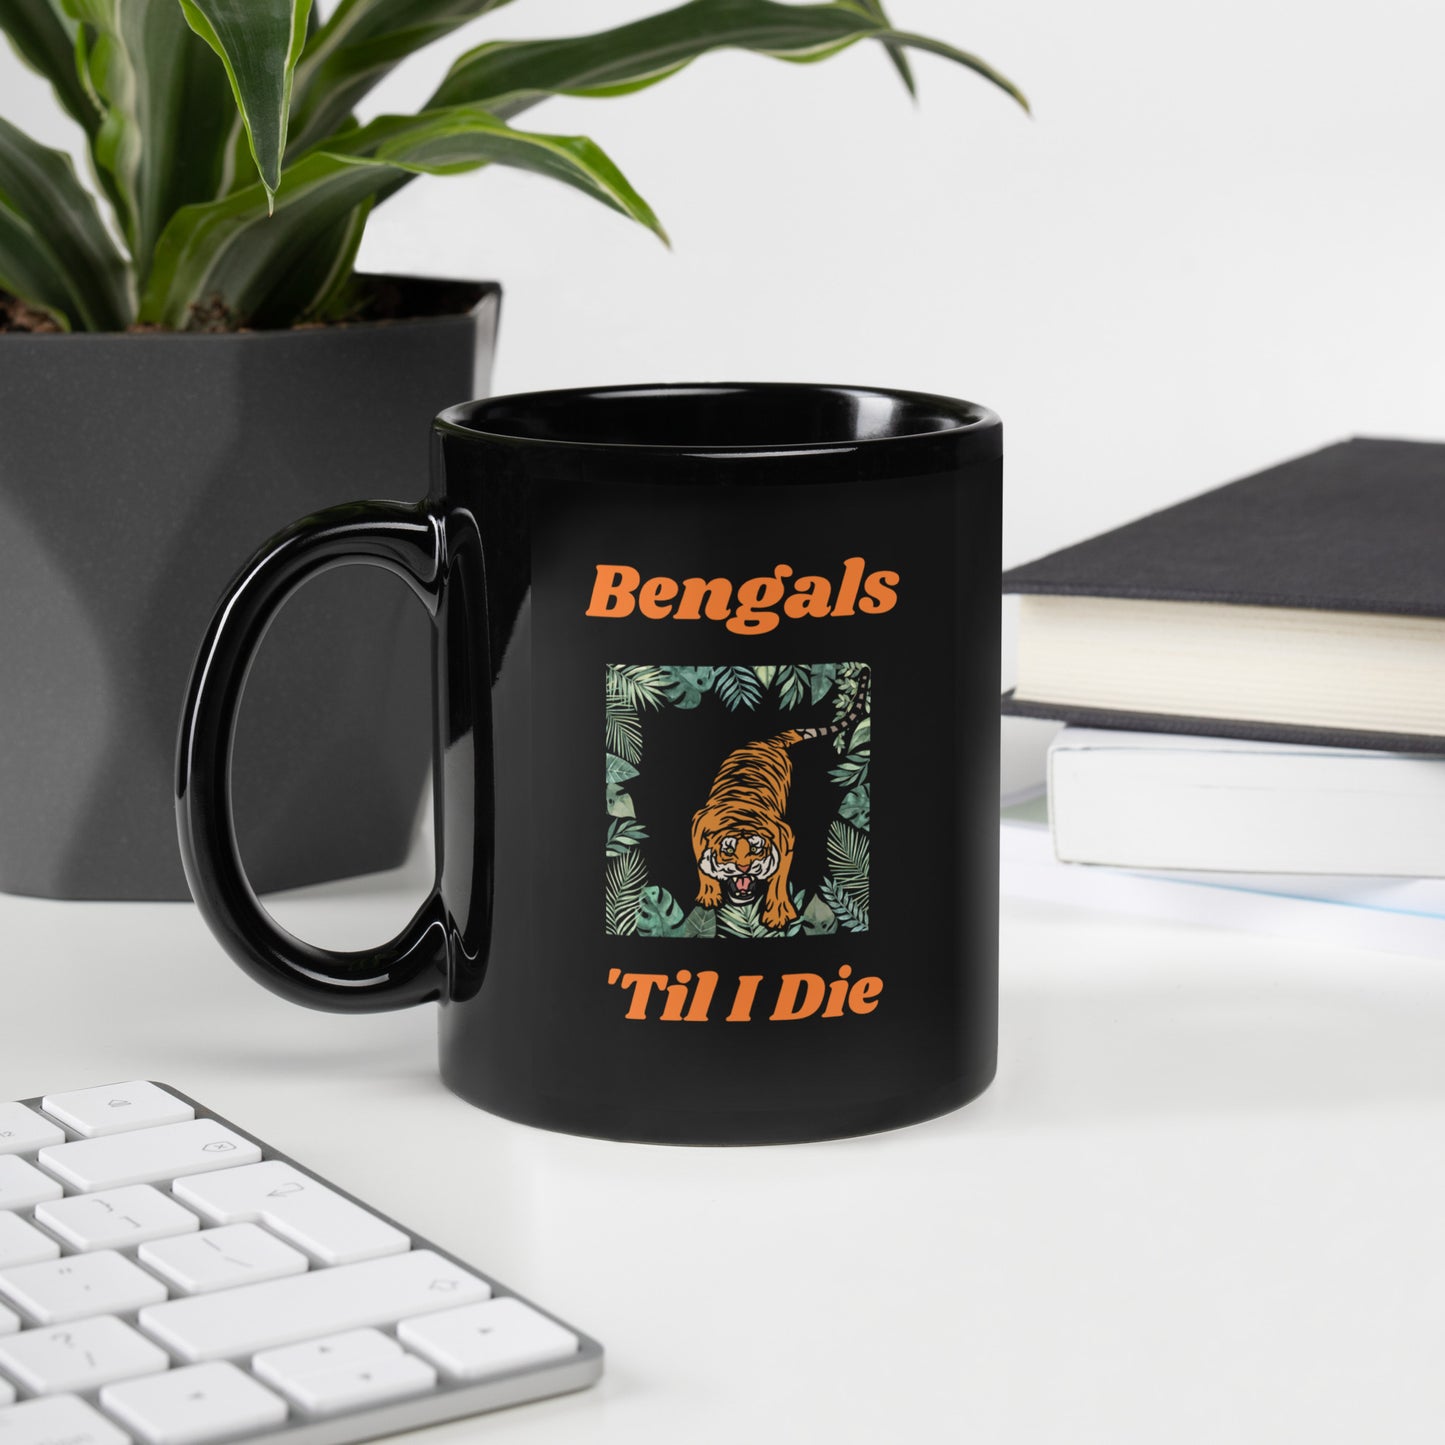 Bengals 'Til I Die Mug